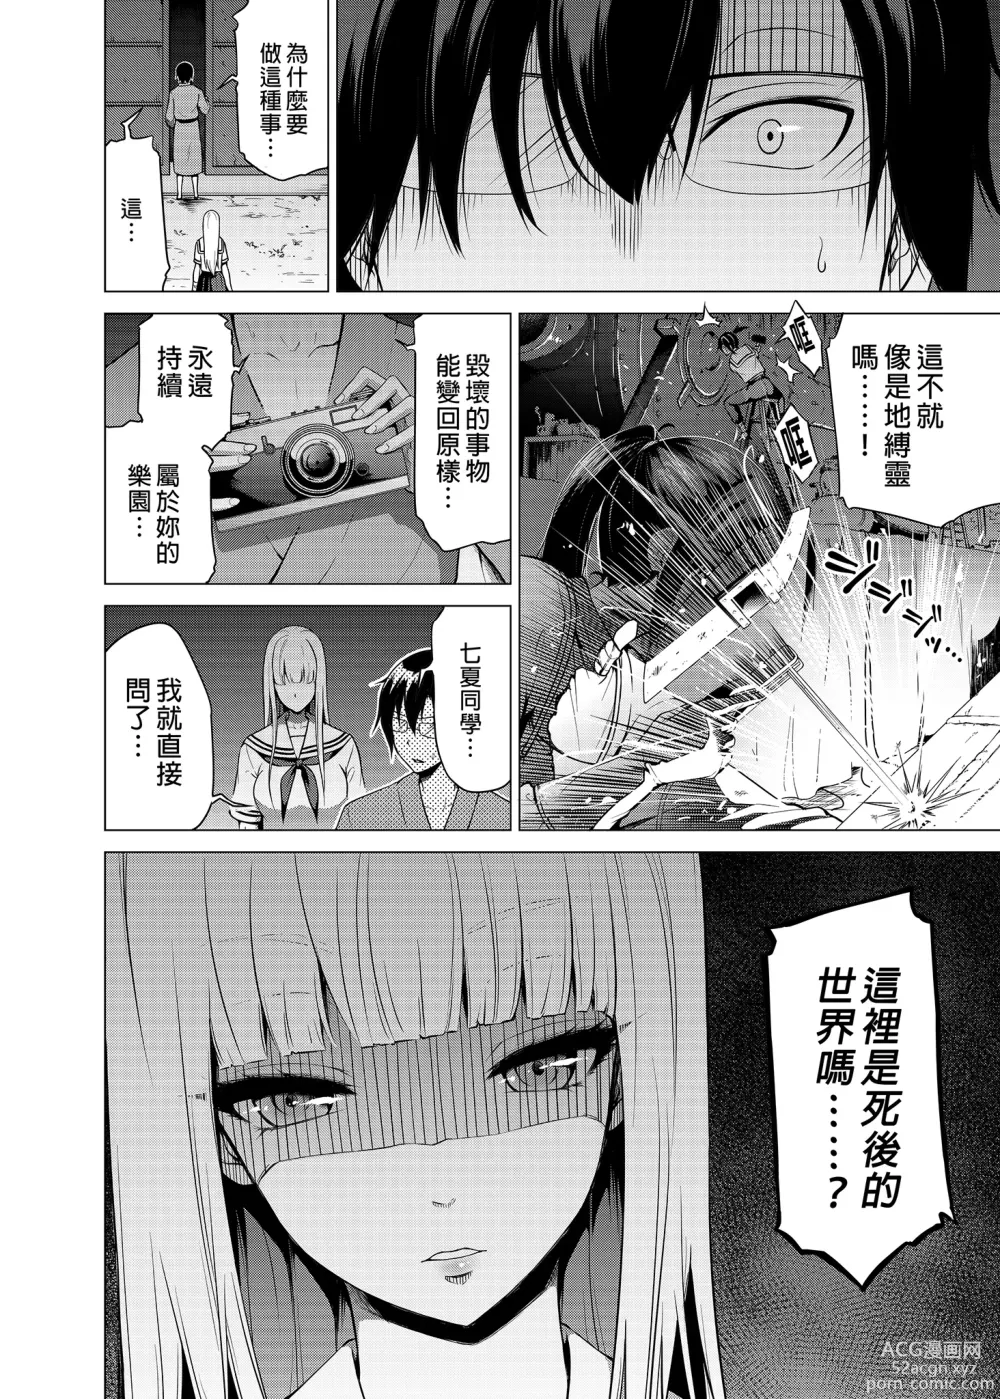 Page 53 of manga nanaka no rakuen5